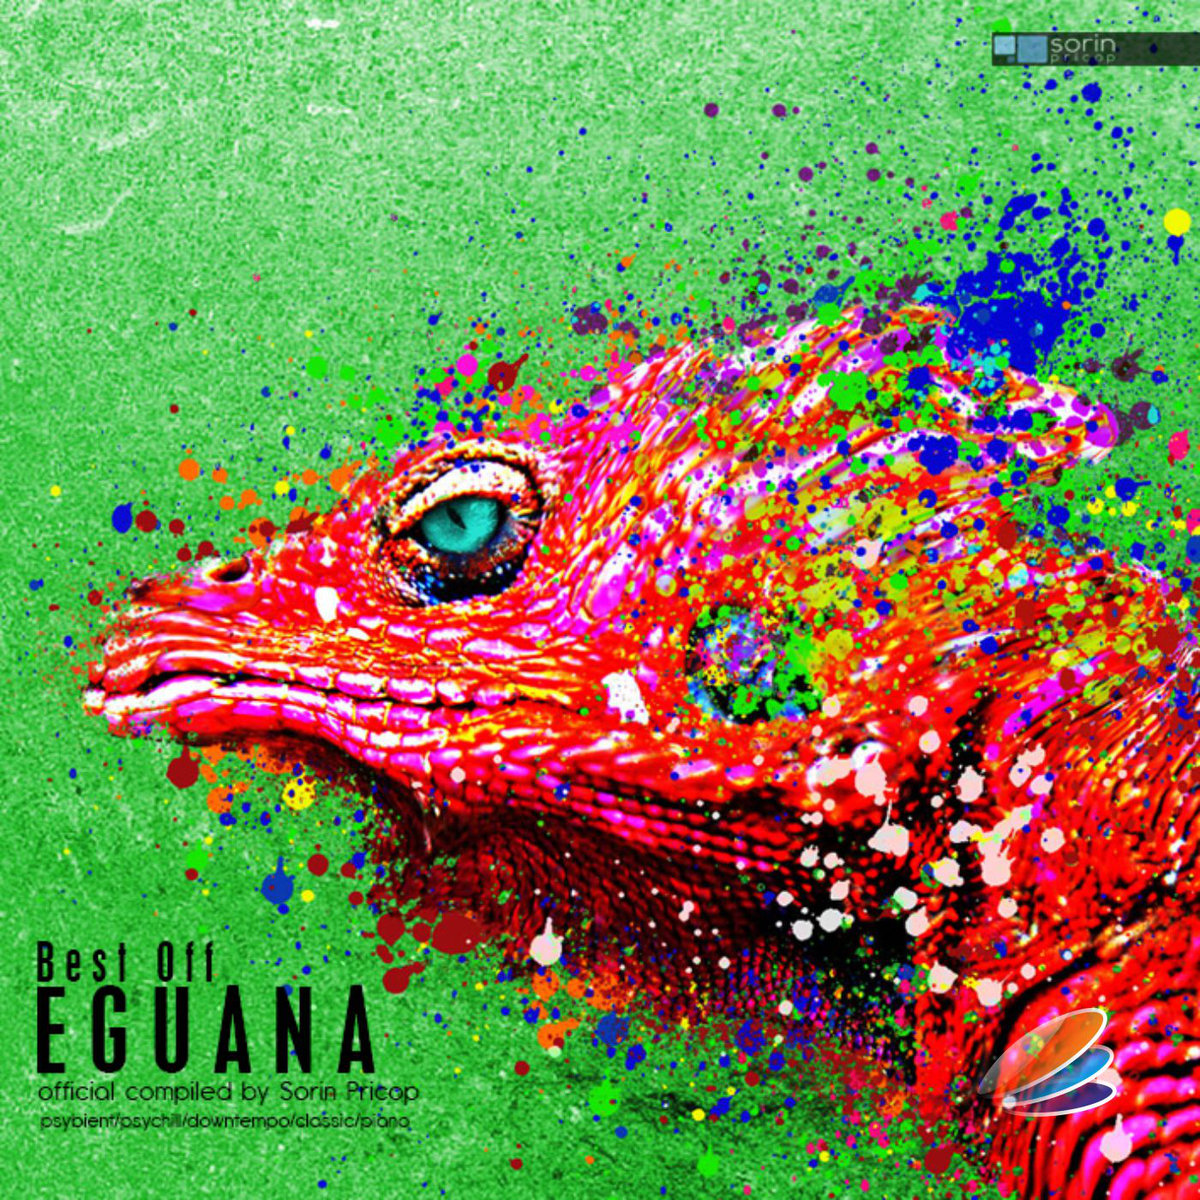 Eguana - Best Off